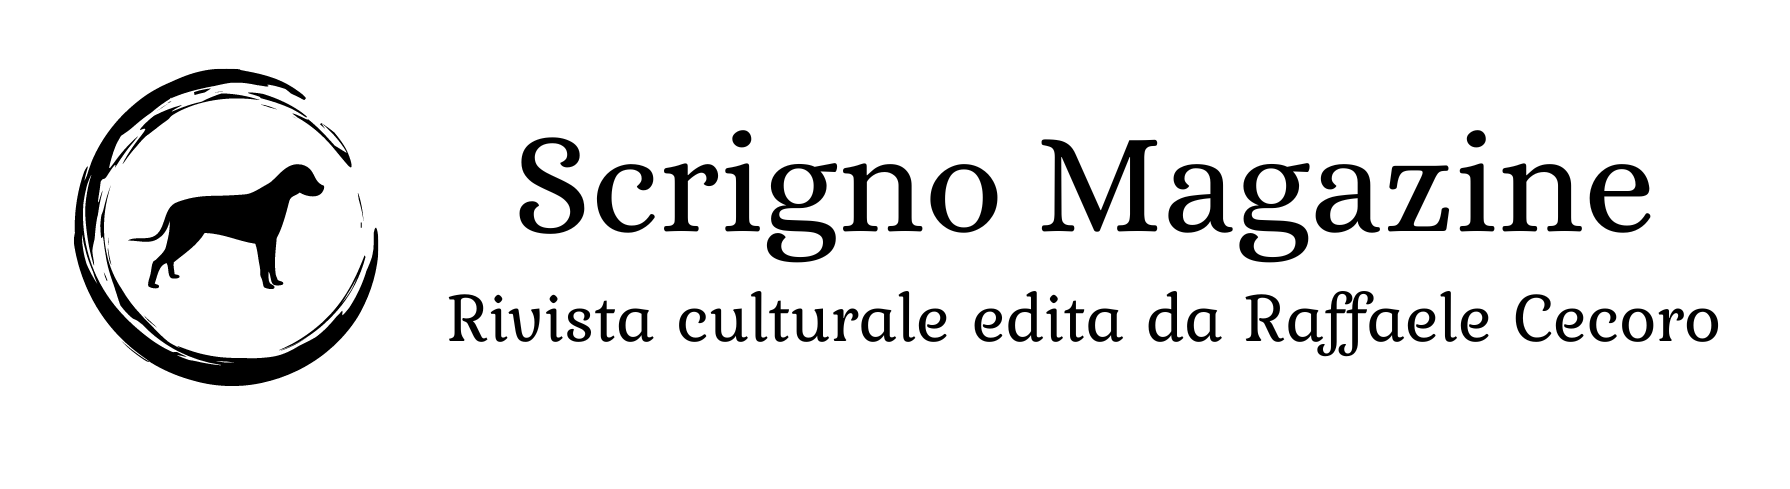 Scrigno Magazine